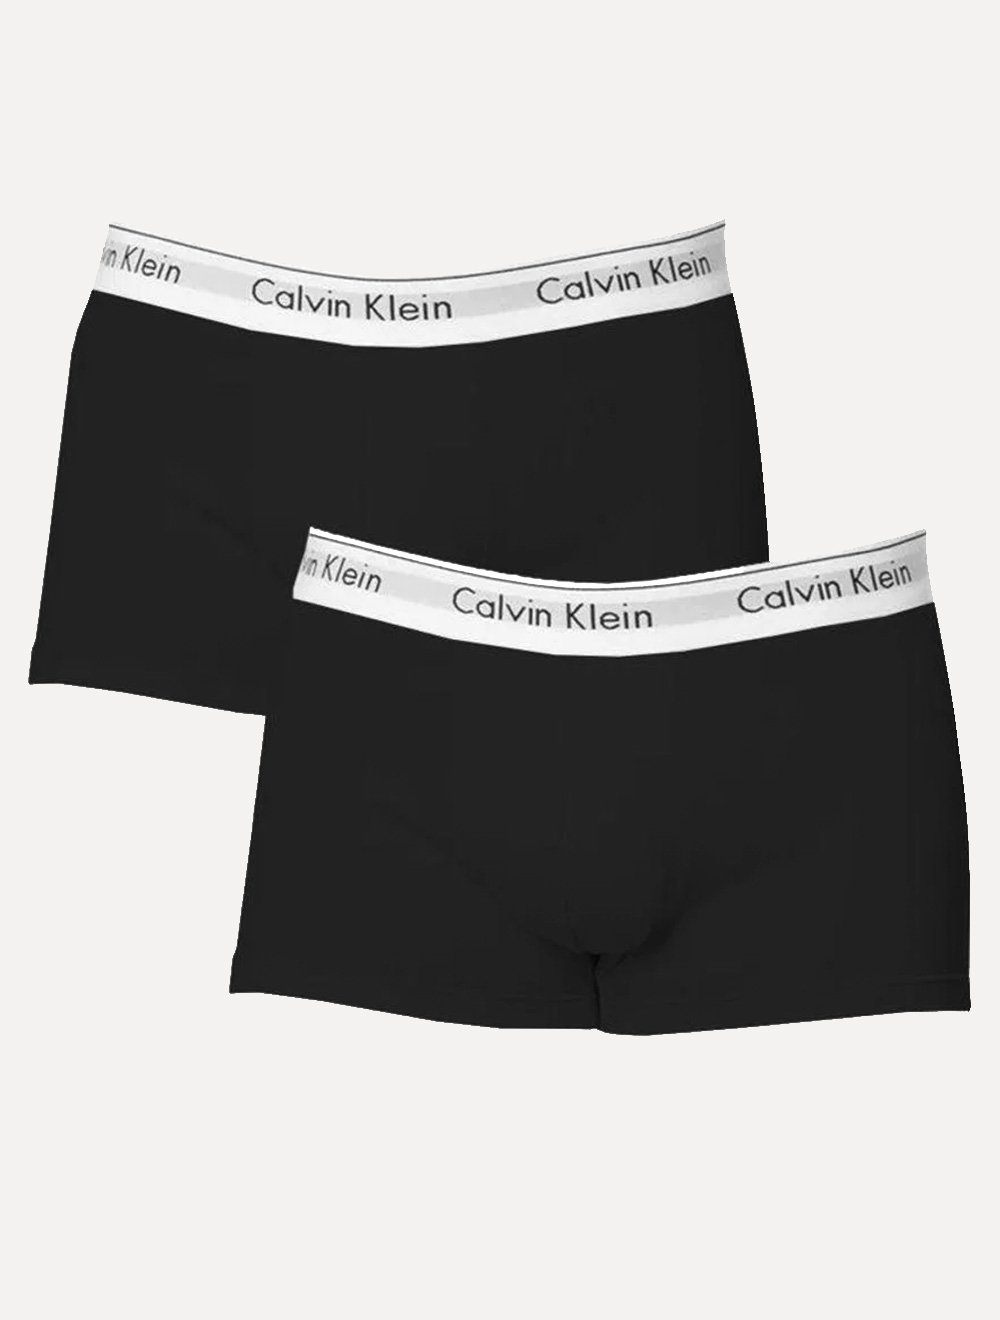 Cuecas Calvin Klein Trunk Modern Cotton Preta Pack 2UN